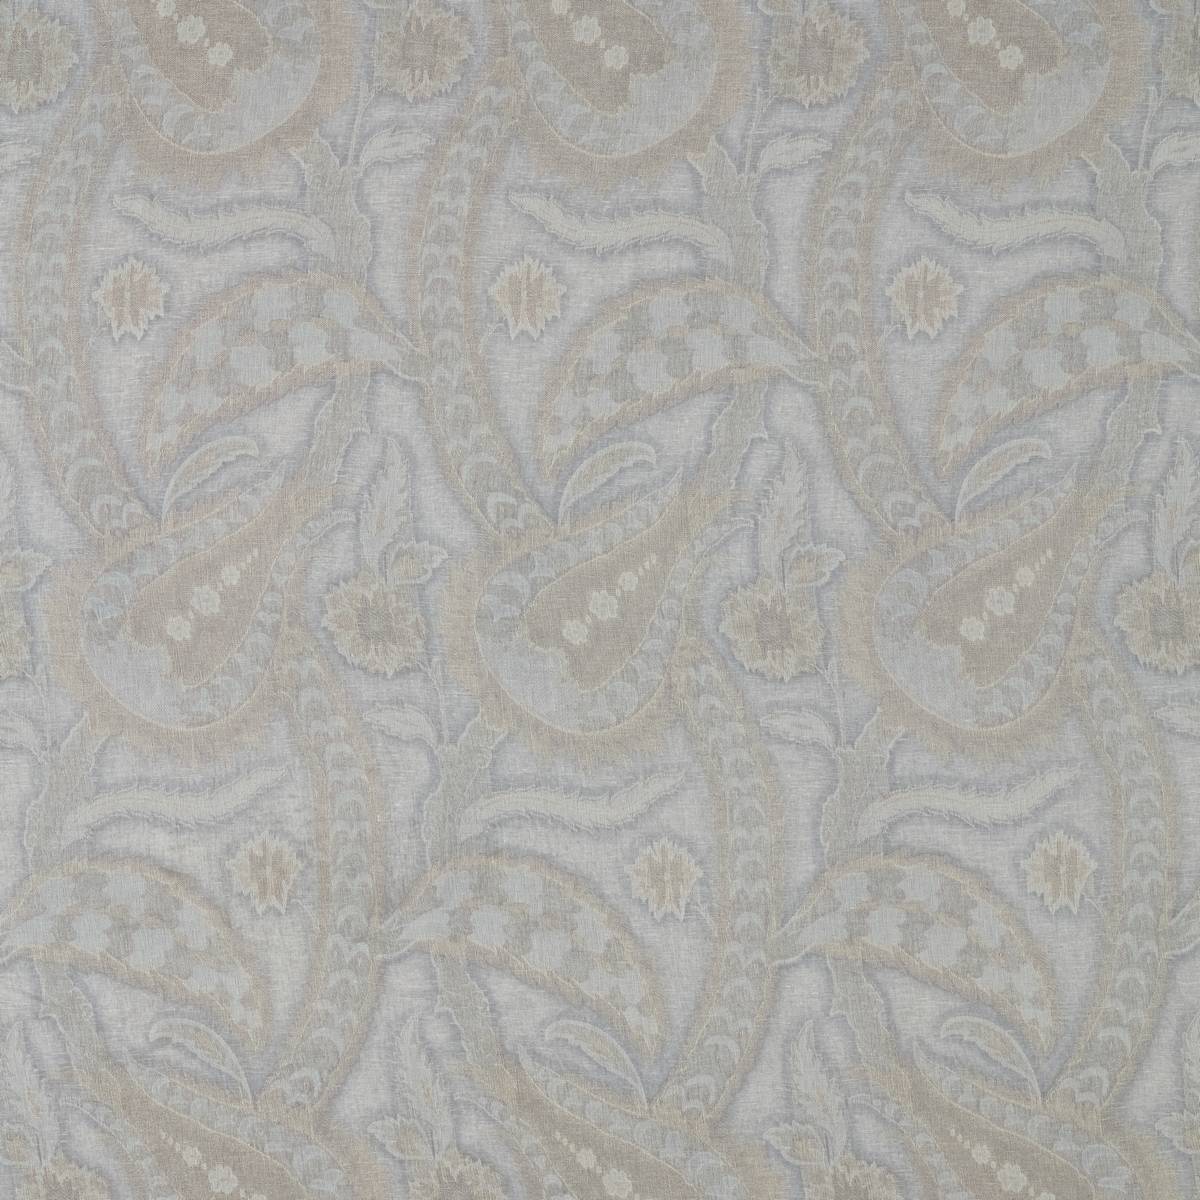 Oberon Zinc Fabric by Zoffany